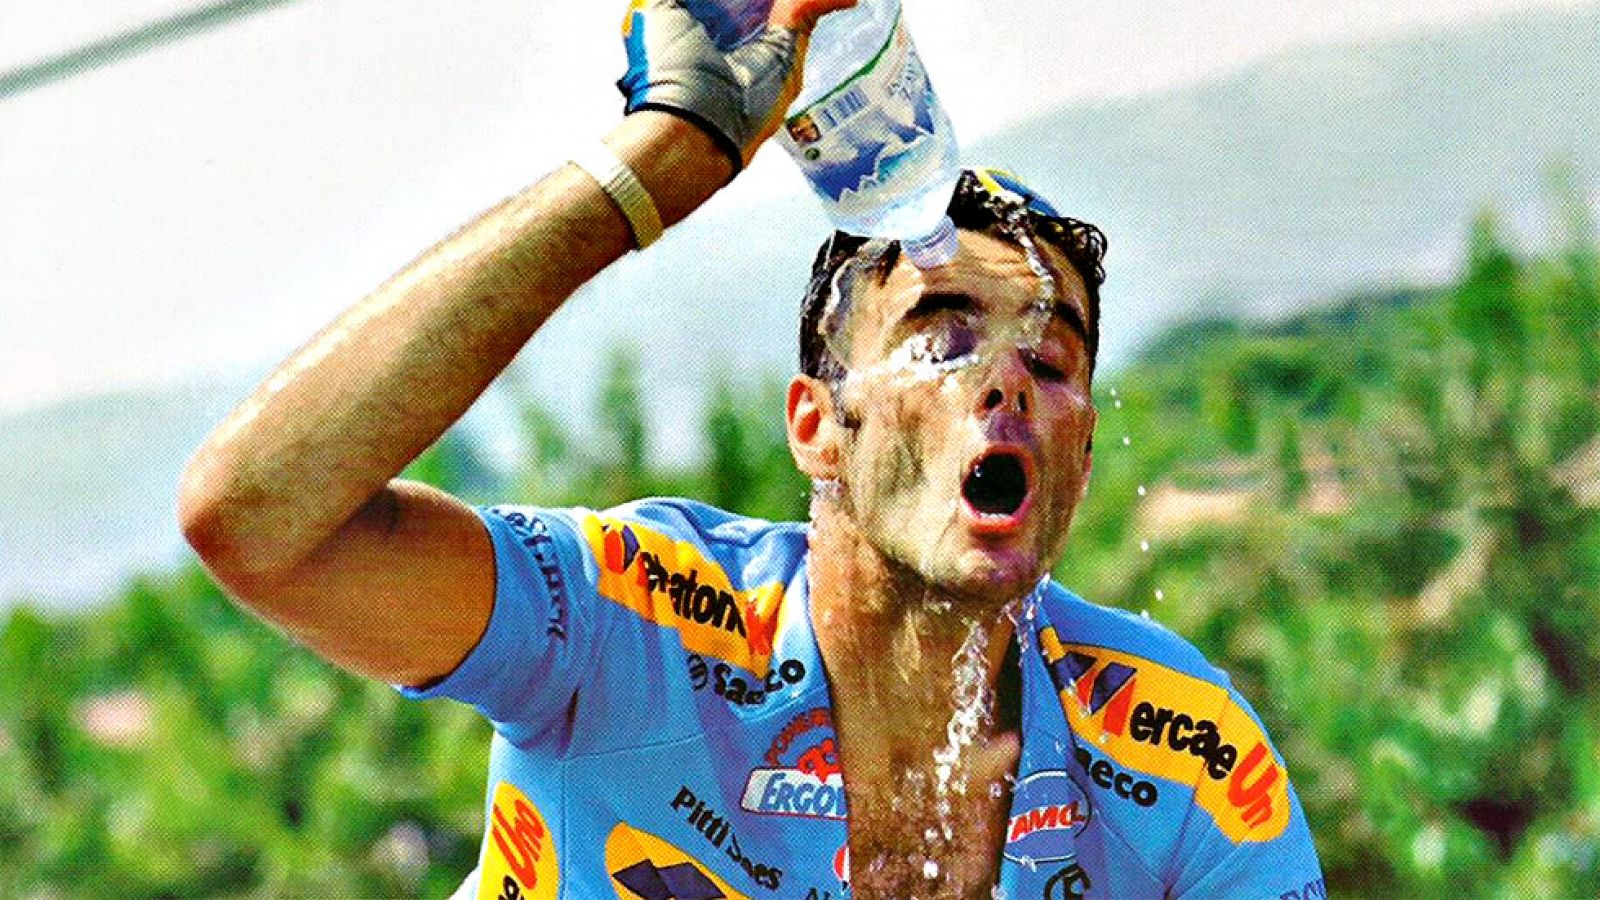 El día de la gloria le llegó al esprinter italiano en la 15ª etapa del Tour de Francia 1994 cuando se impuso en la etapa que unía Montpellier y Carpentras, y en la que se subió y bajó el temido Mont Ventoux.